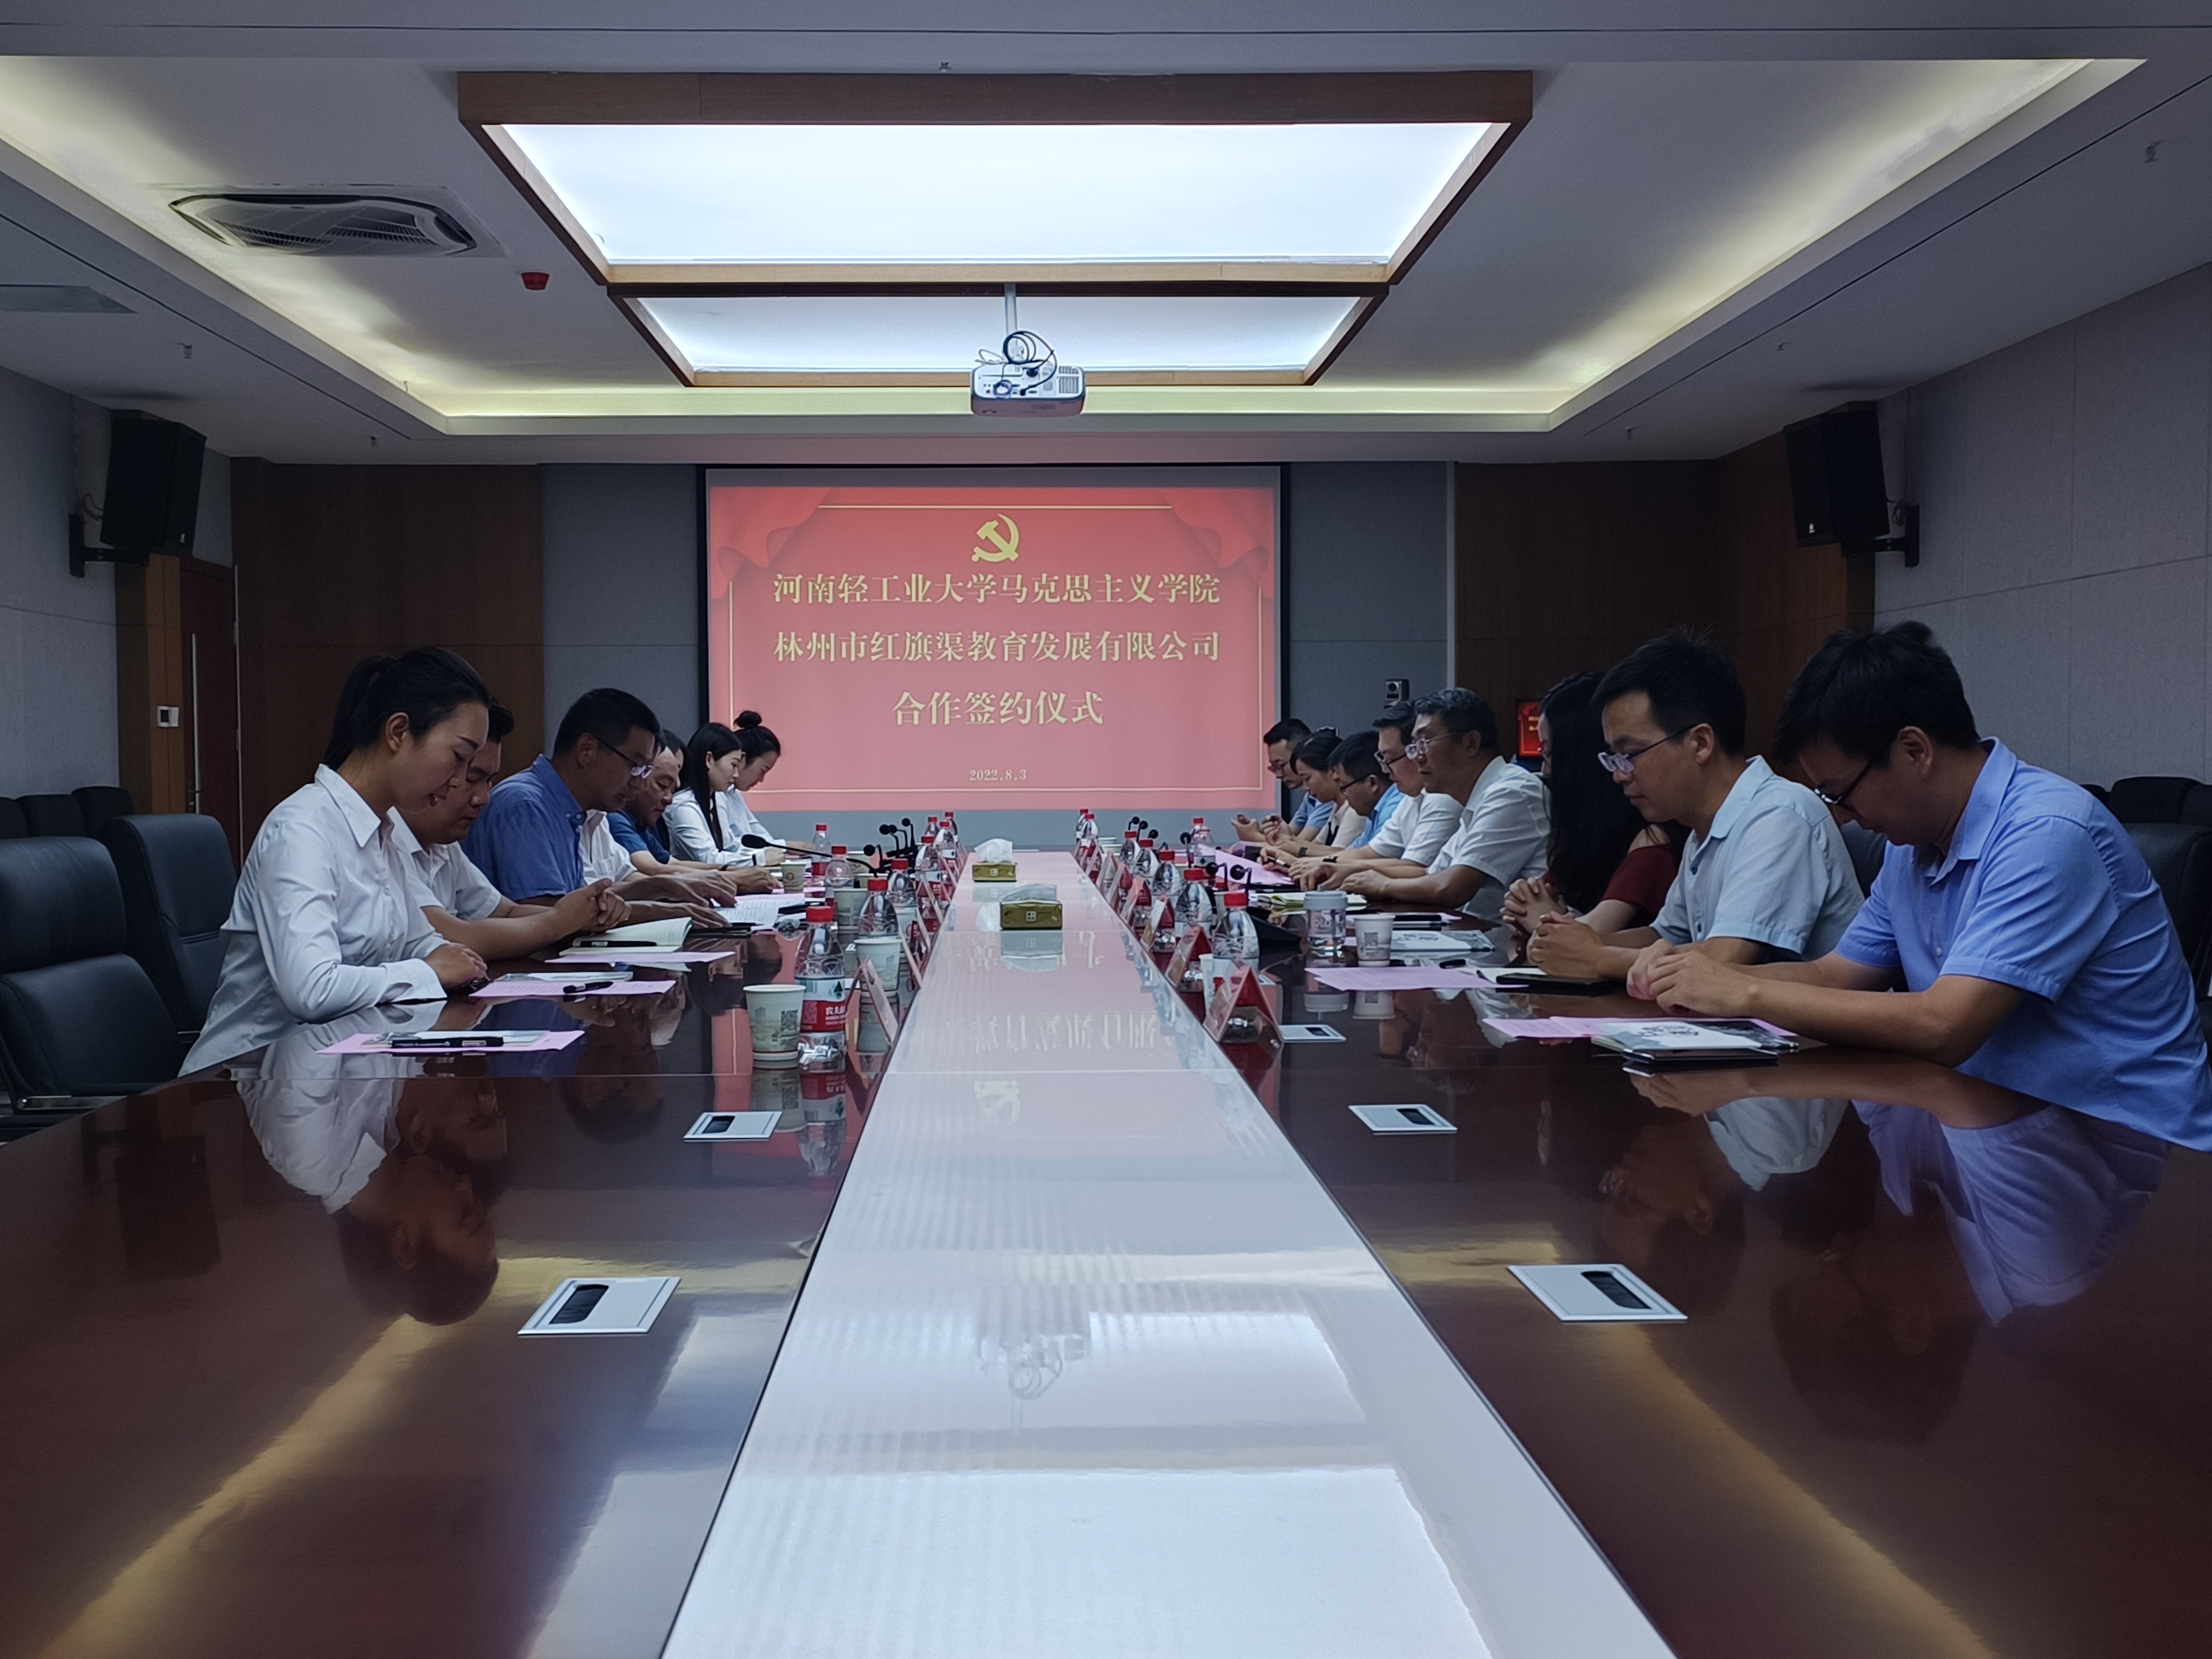 郑州轻工大马克思主义学院与红旗渠教育发展培训中心结对共建签约仪式在林州举行